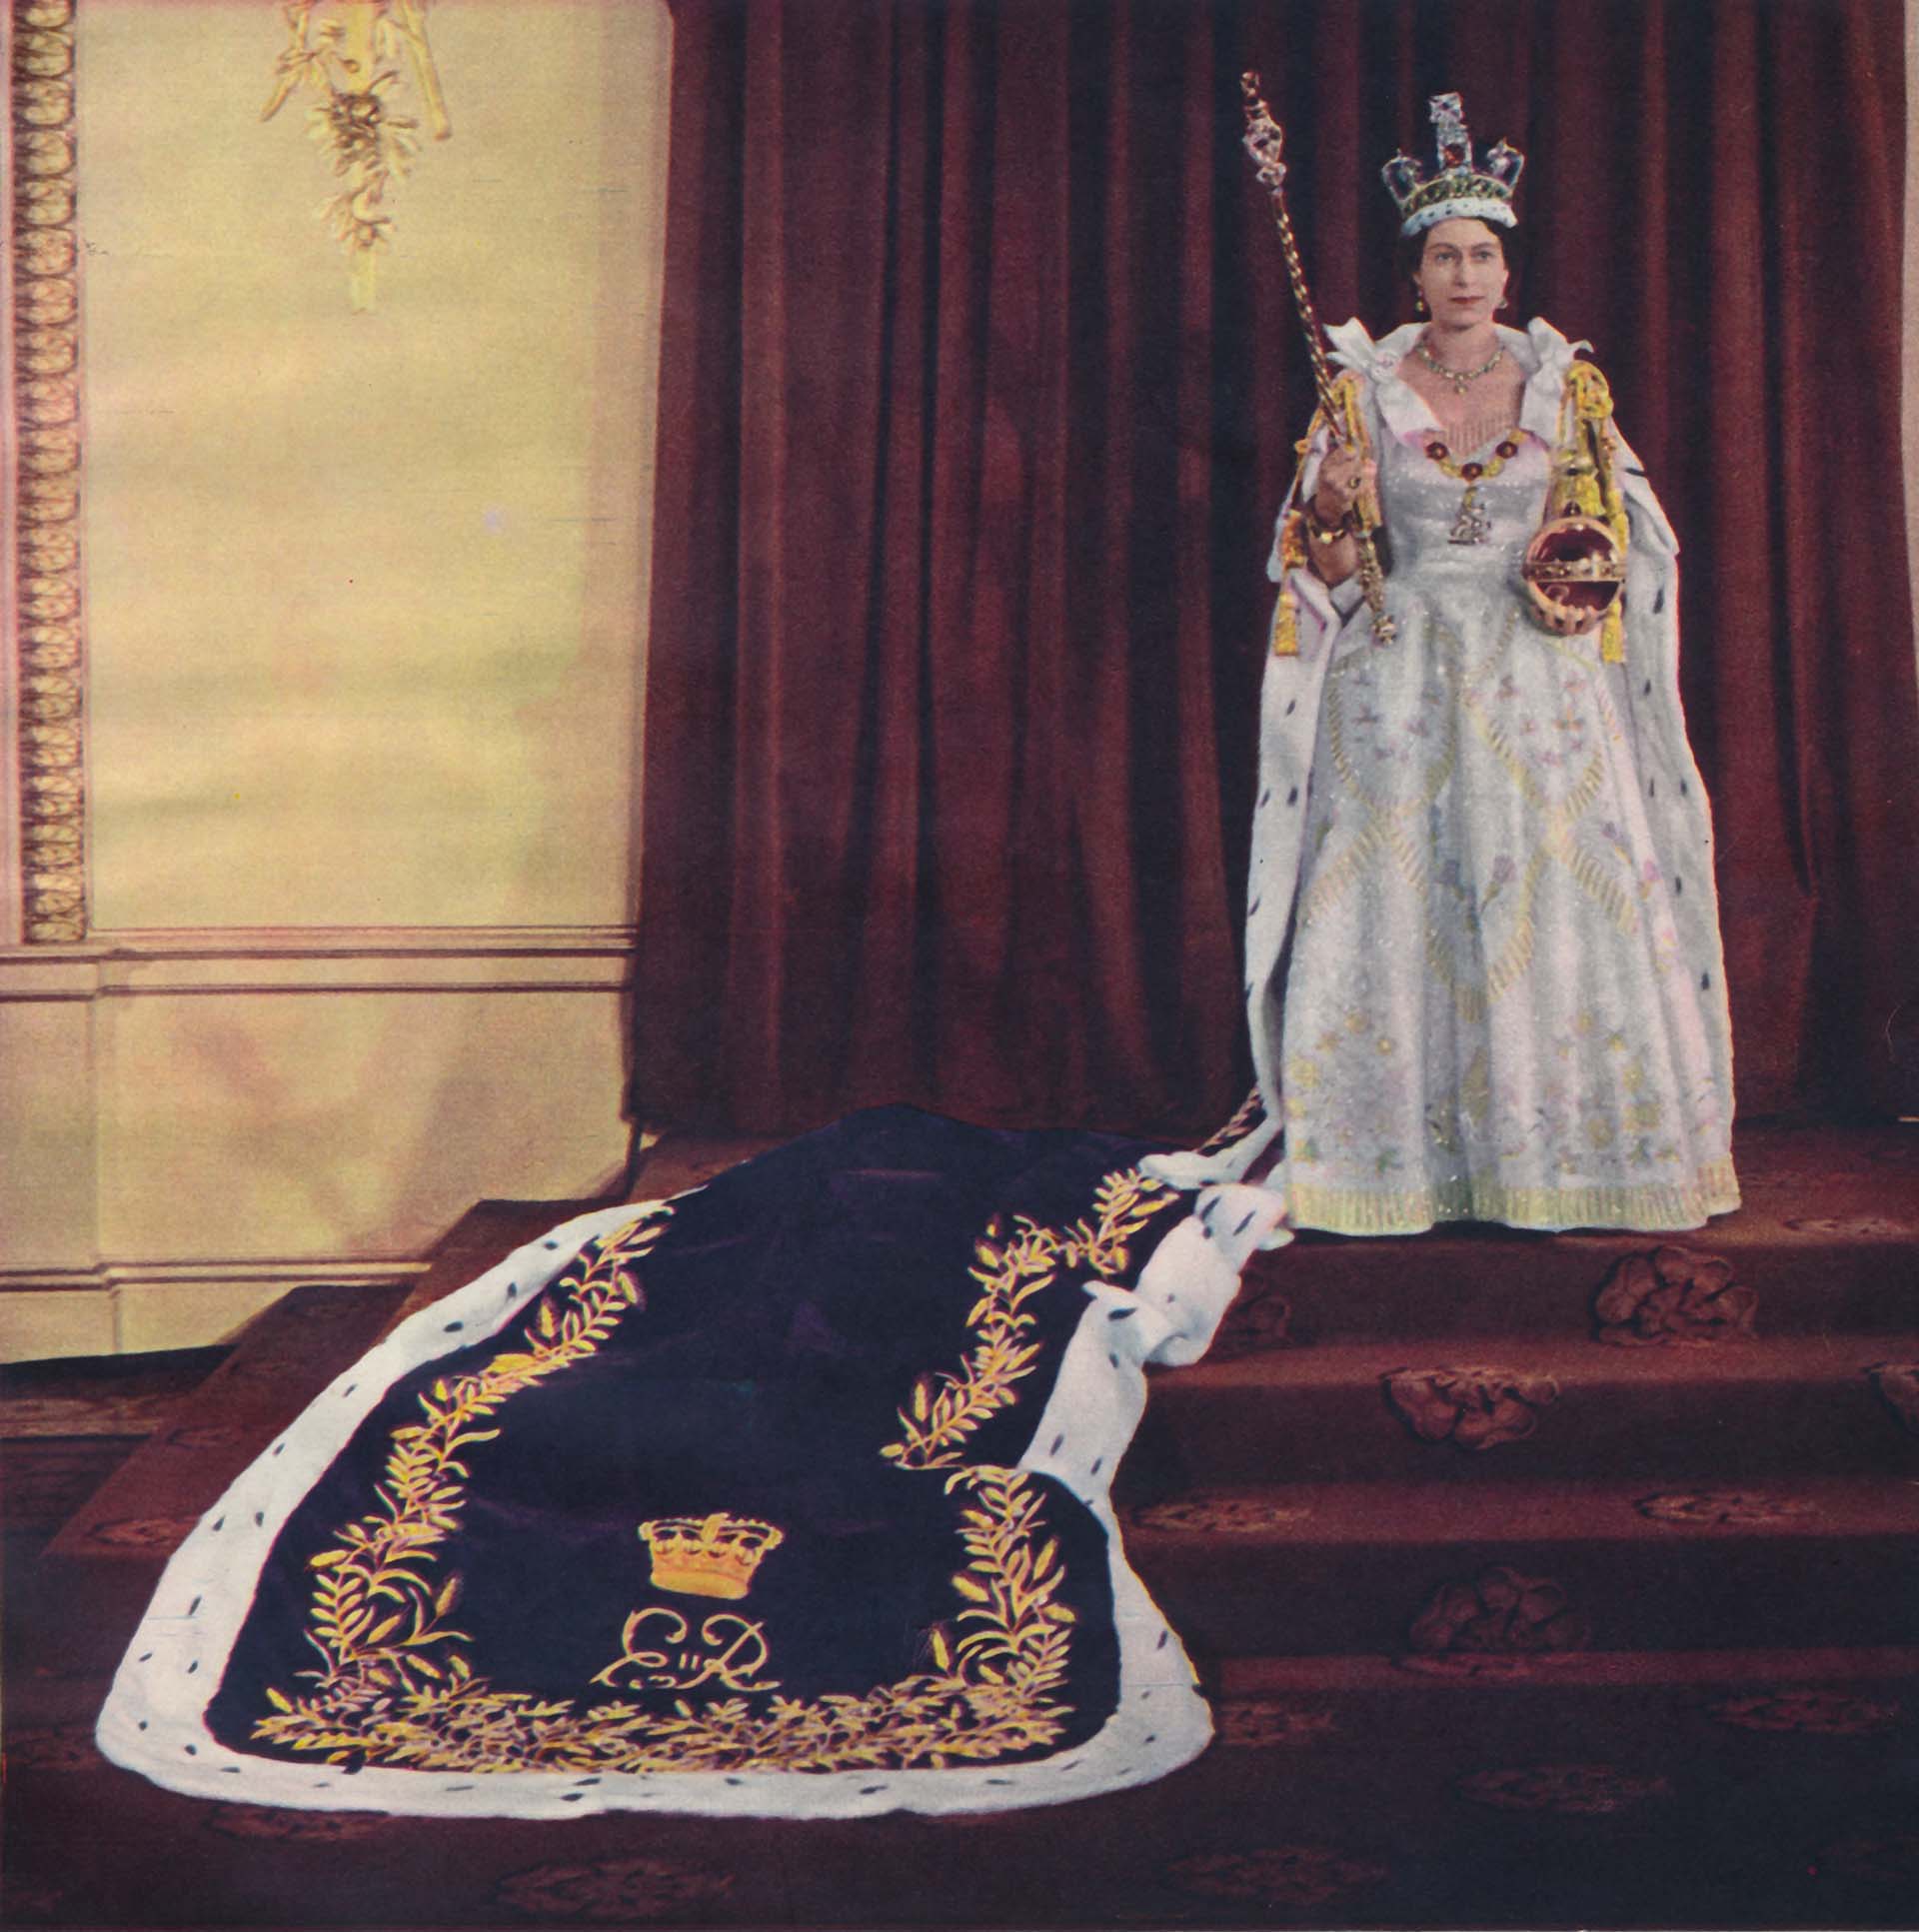 Seis años antes de su coronación, la reina se había casado con el príncipe Felipe, duque de Edimburgo, con quien ya se había convertido en madre de dos de sus cuatro hijos, el príncipe Carlos, nacido en 1948, y la princesa Ana, nacida en 1950. Luego, llegaron sus dos herederos más jóvenes: el príncipe Andrés, nacido en 1960, y el príncipe Eduardo, en 1964
